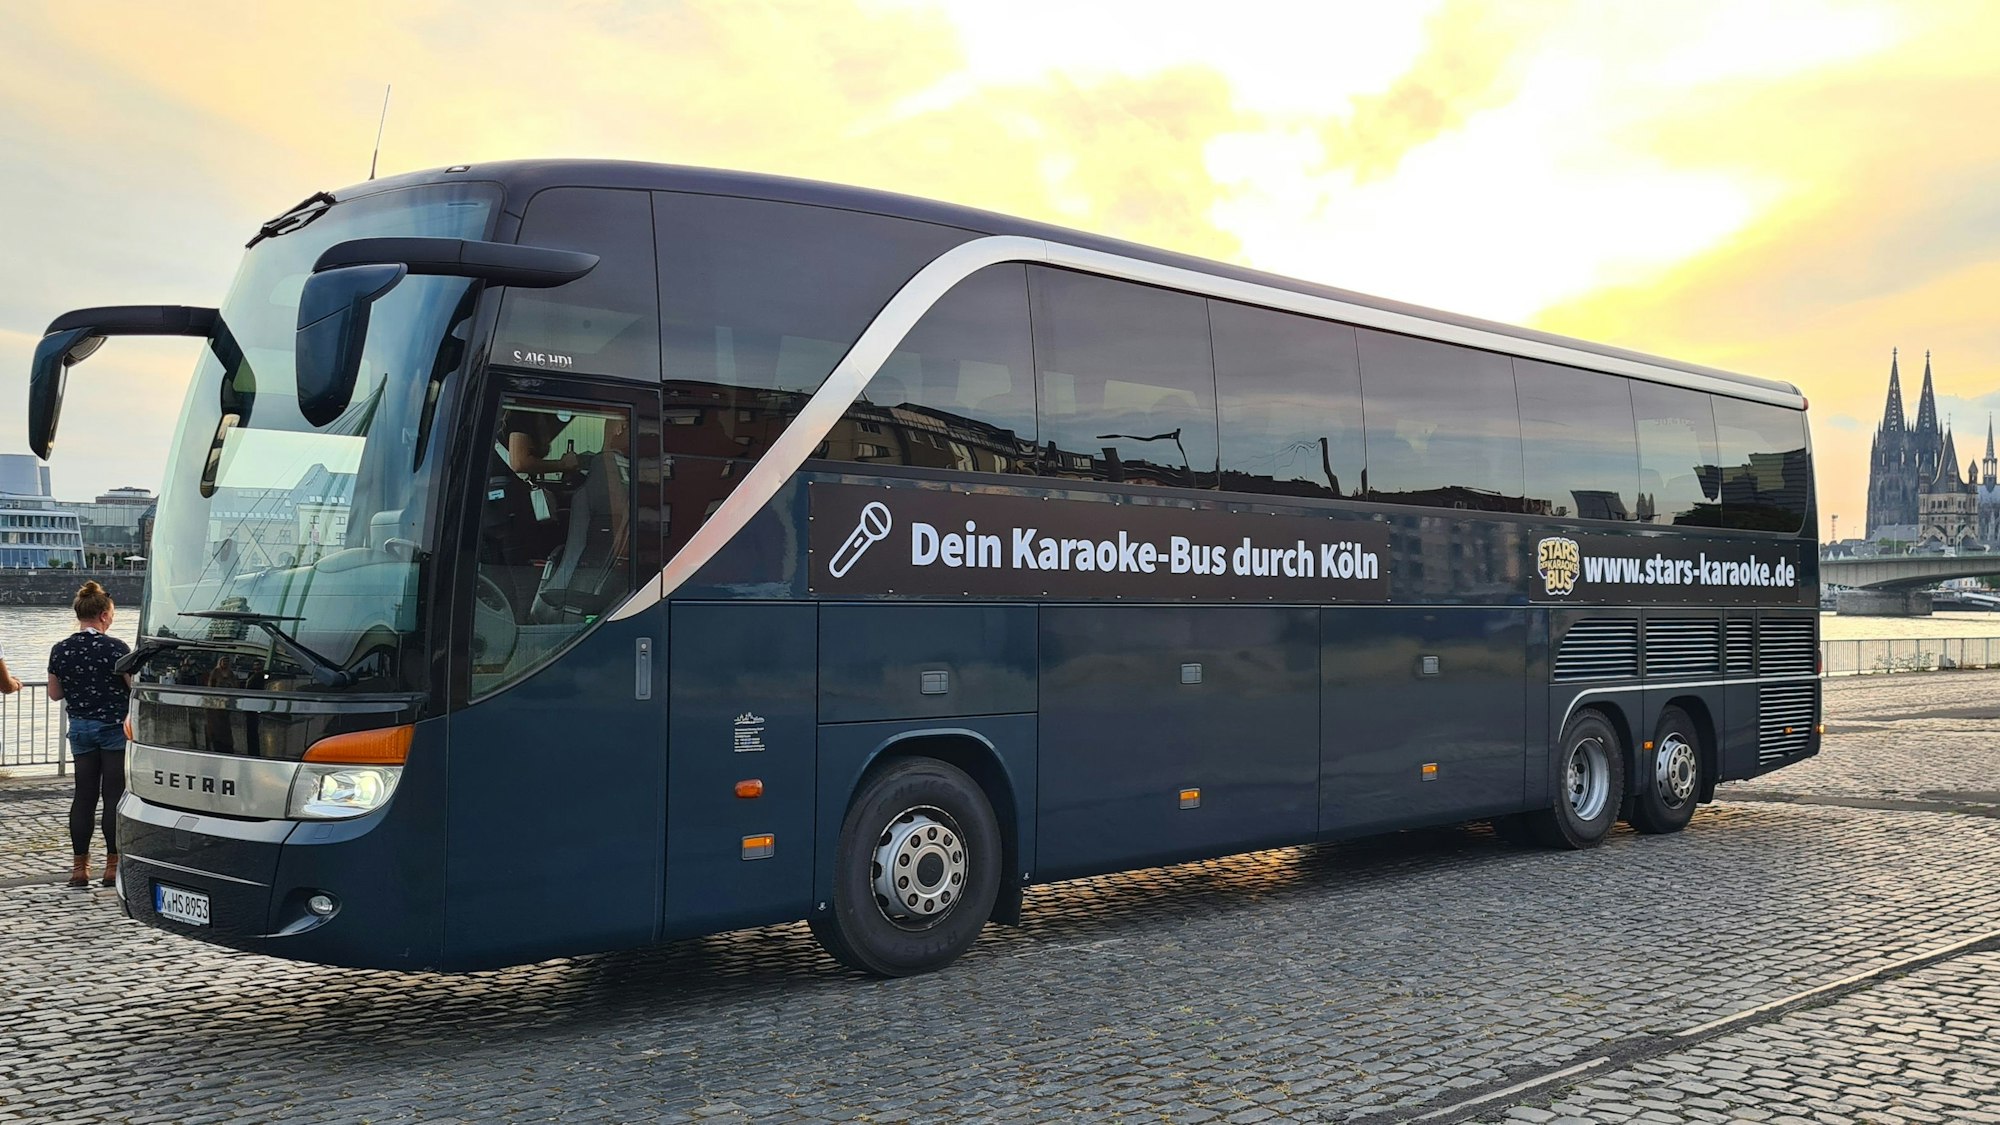 Außenansicht eines Karaoke-Busses am Rhein in Köln.